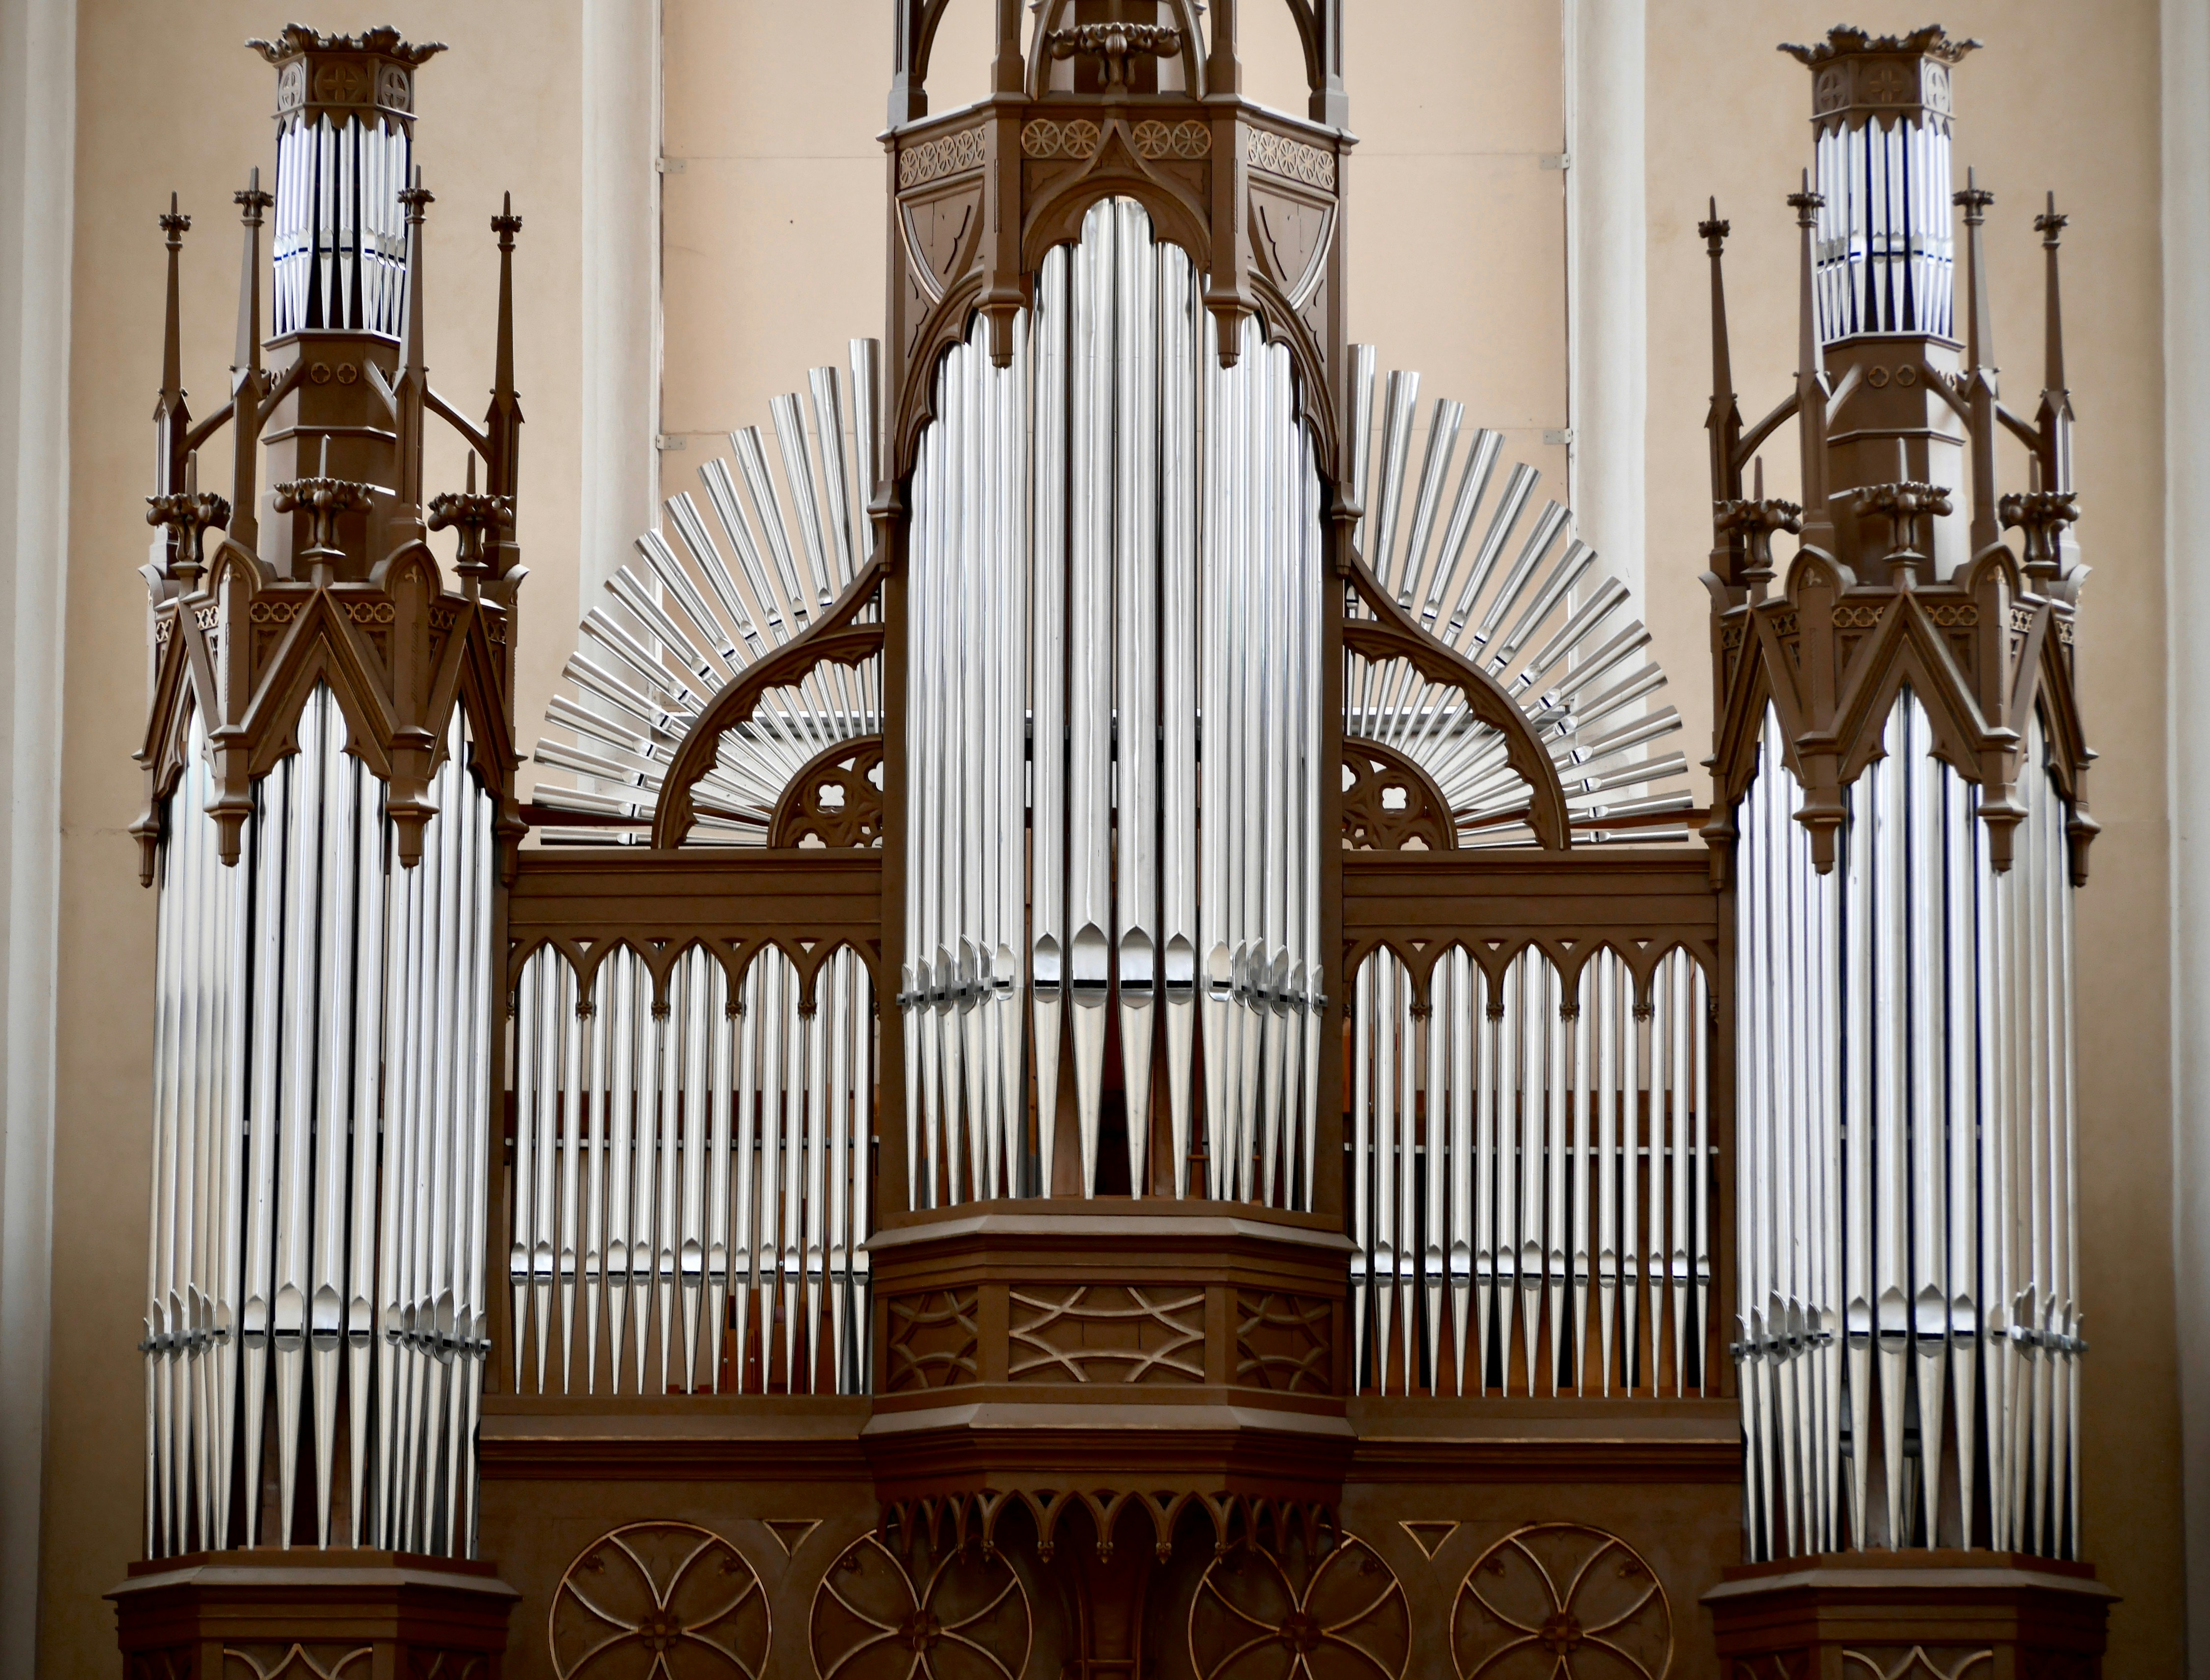 Church organ in Kutna Hora, Czechia